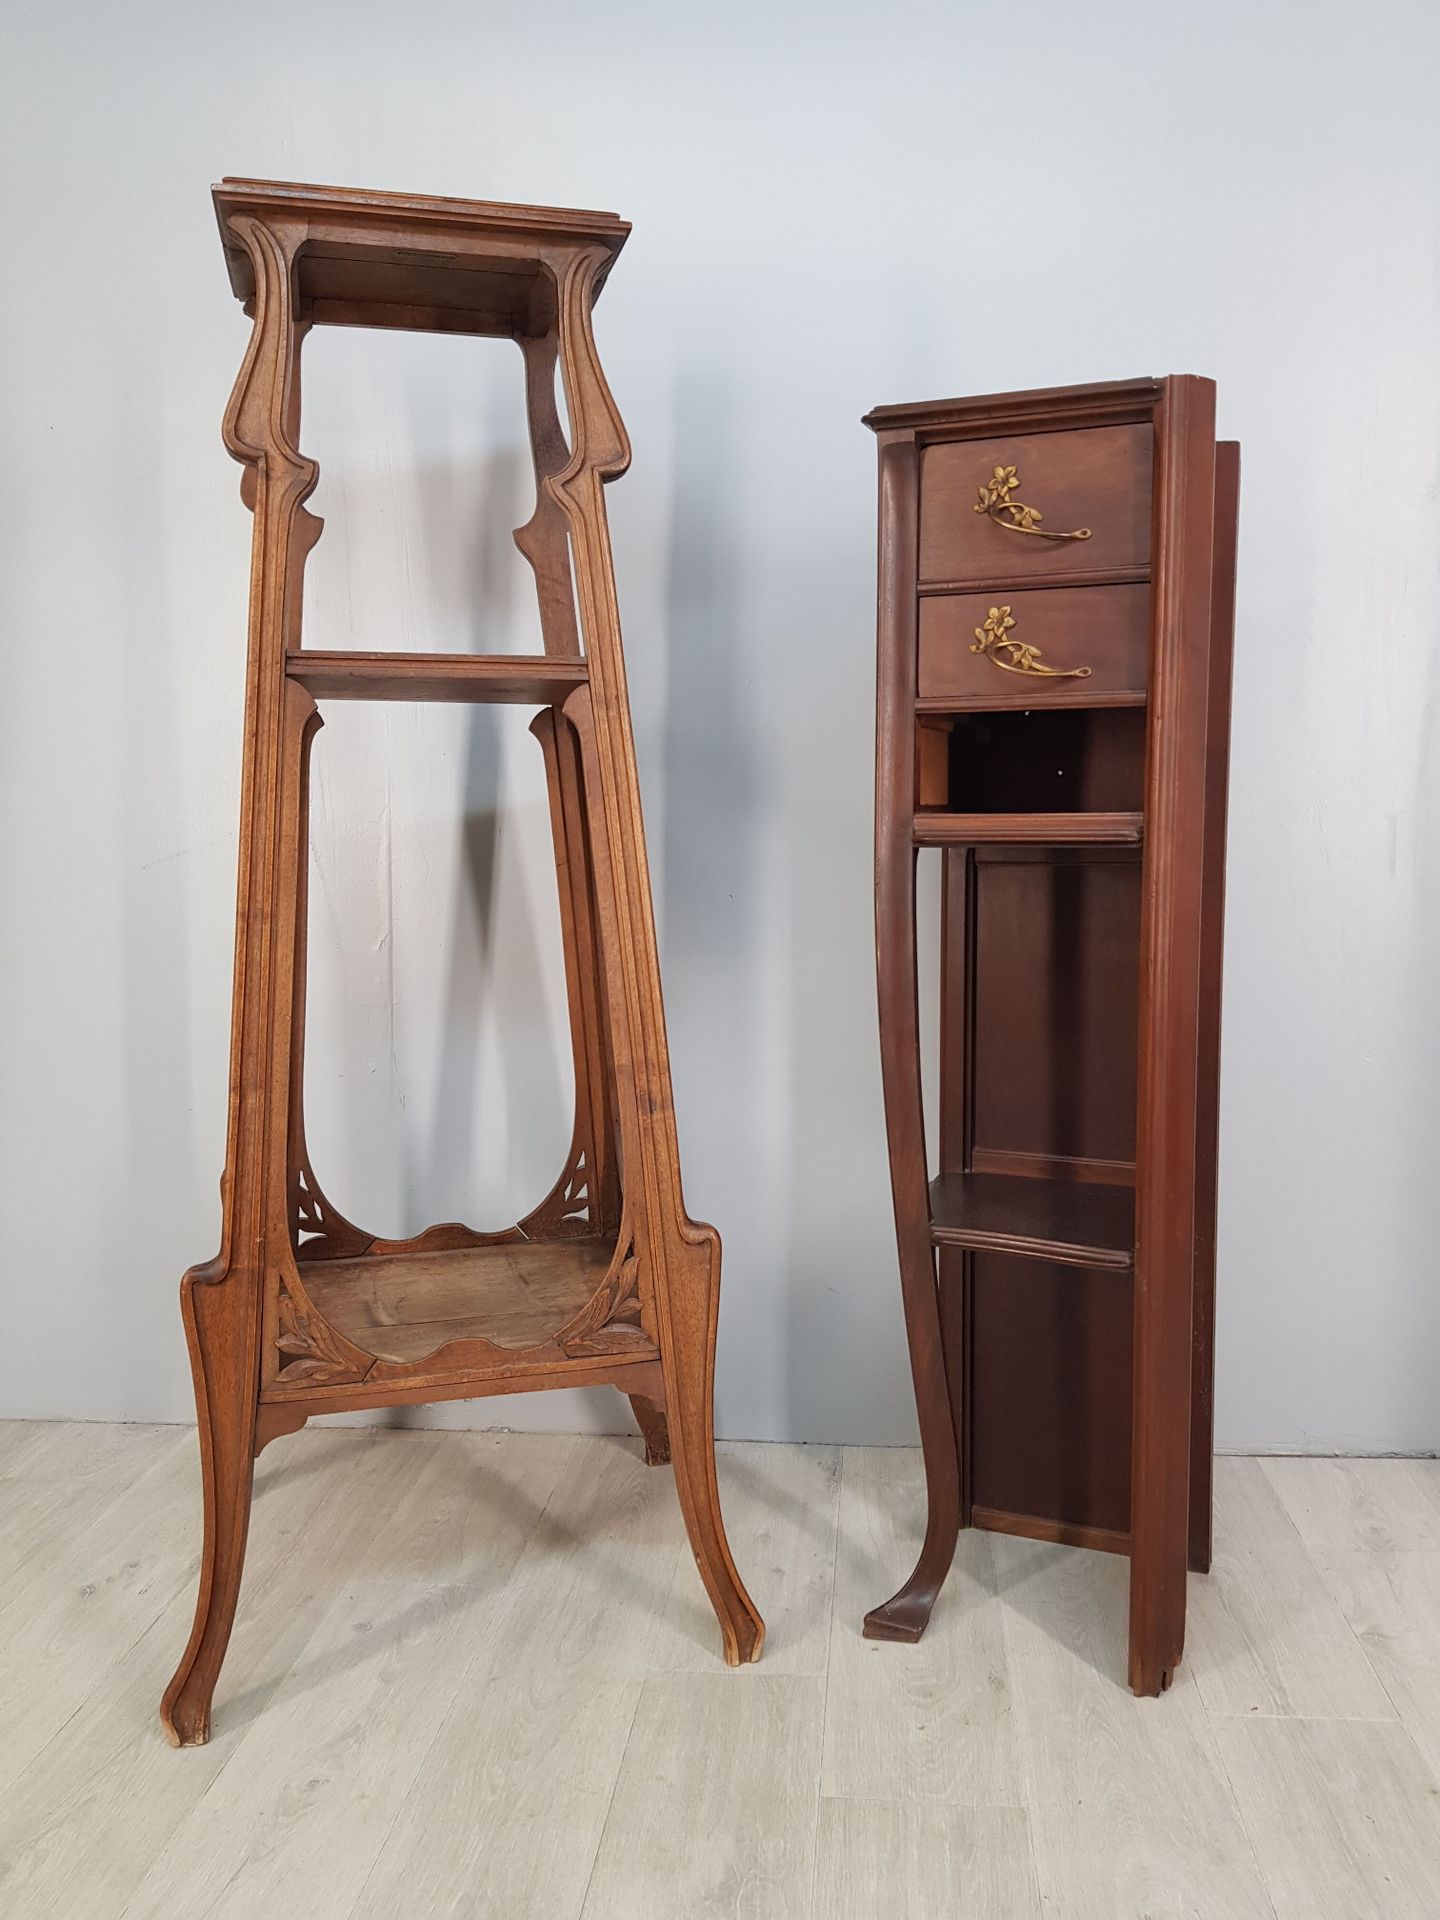 Null Ensemble de mobilier Art Nouveau comprenant :
- une sellette haute en bois &hellip;